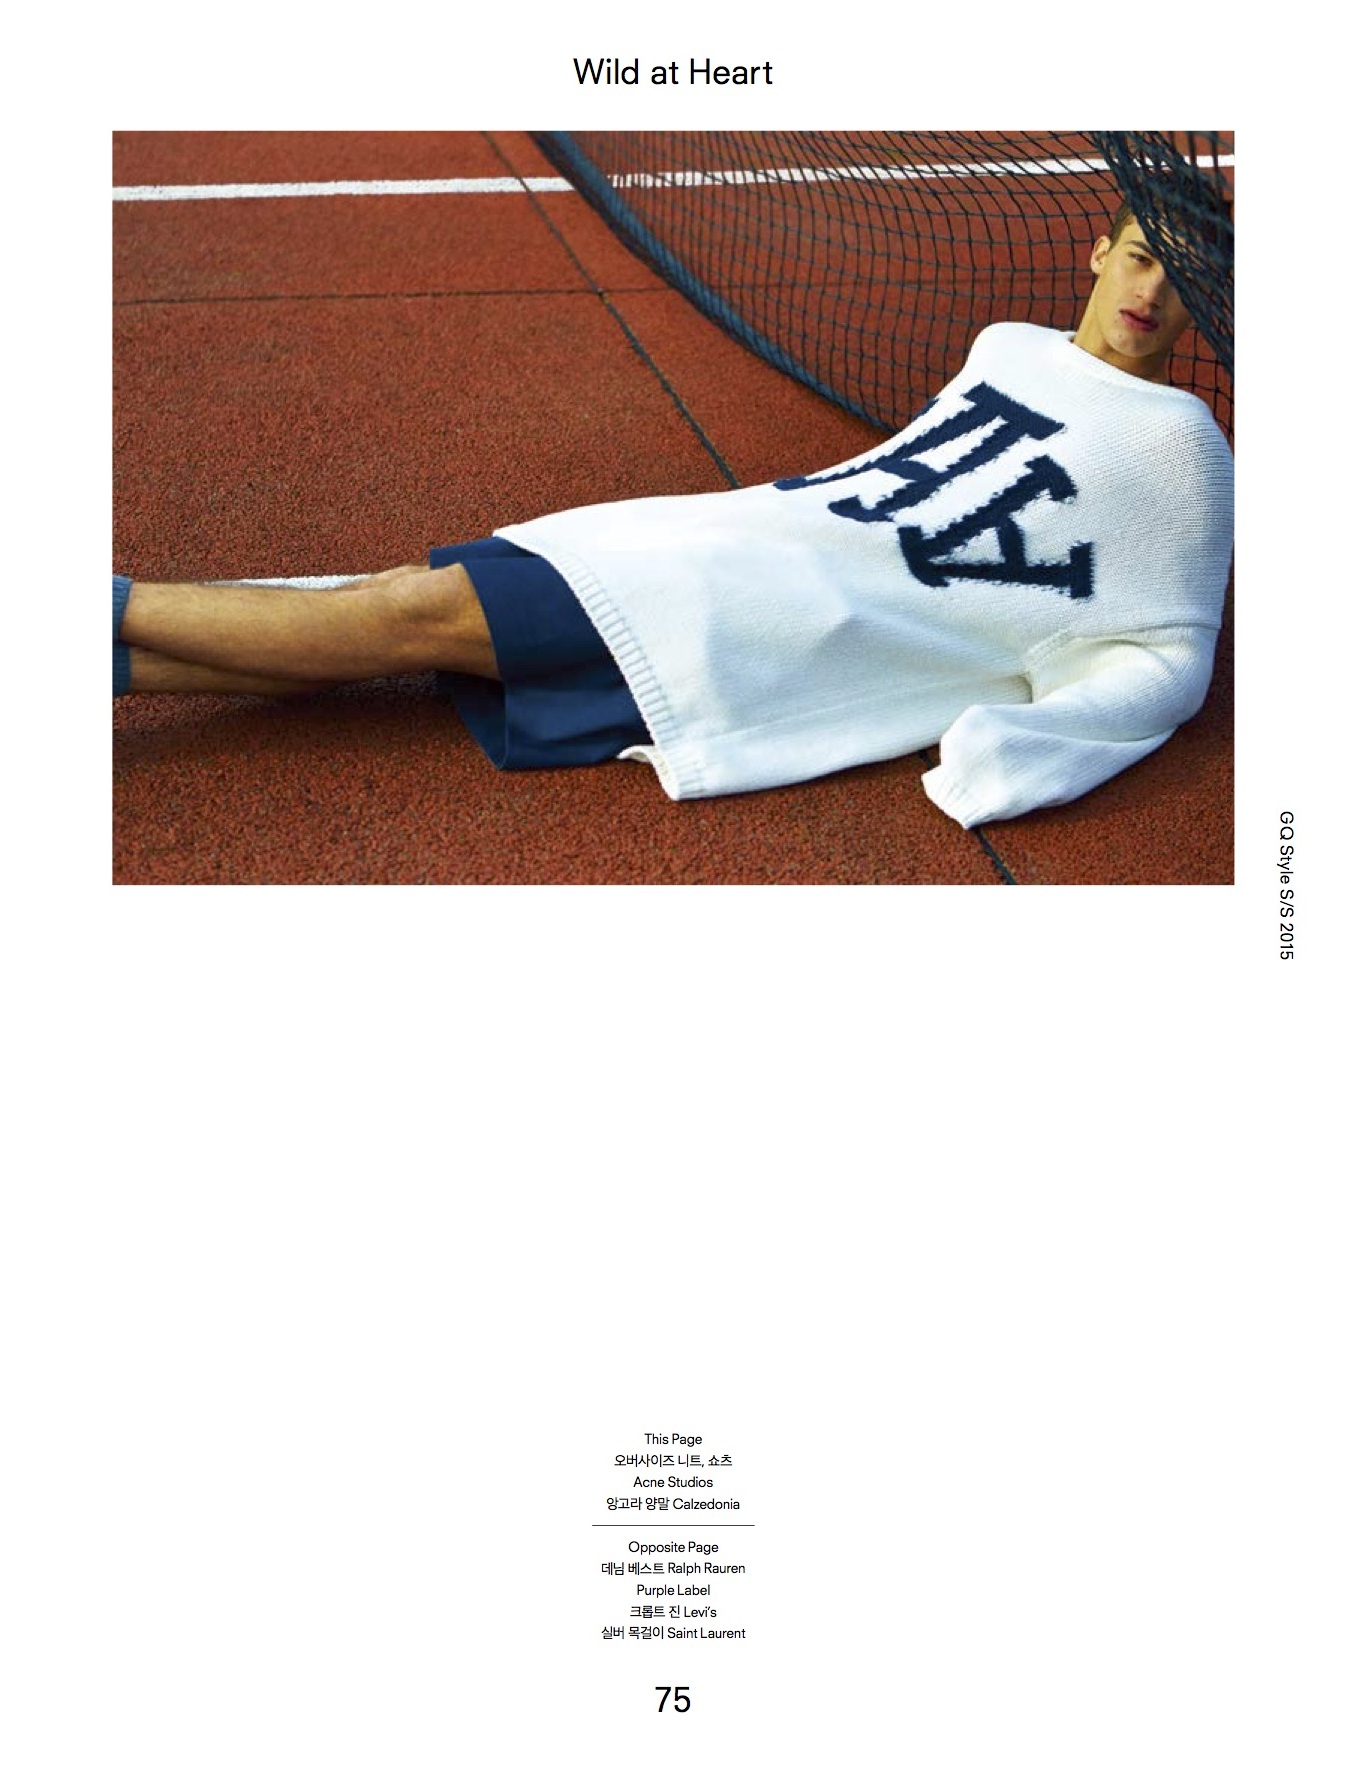 Alessio Pozzi GQ Style Korea 2015 Cover Editorial Shoot 004